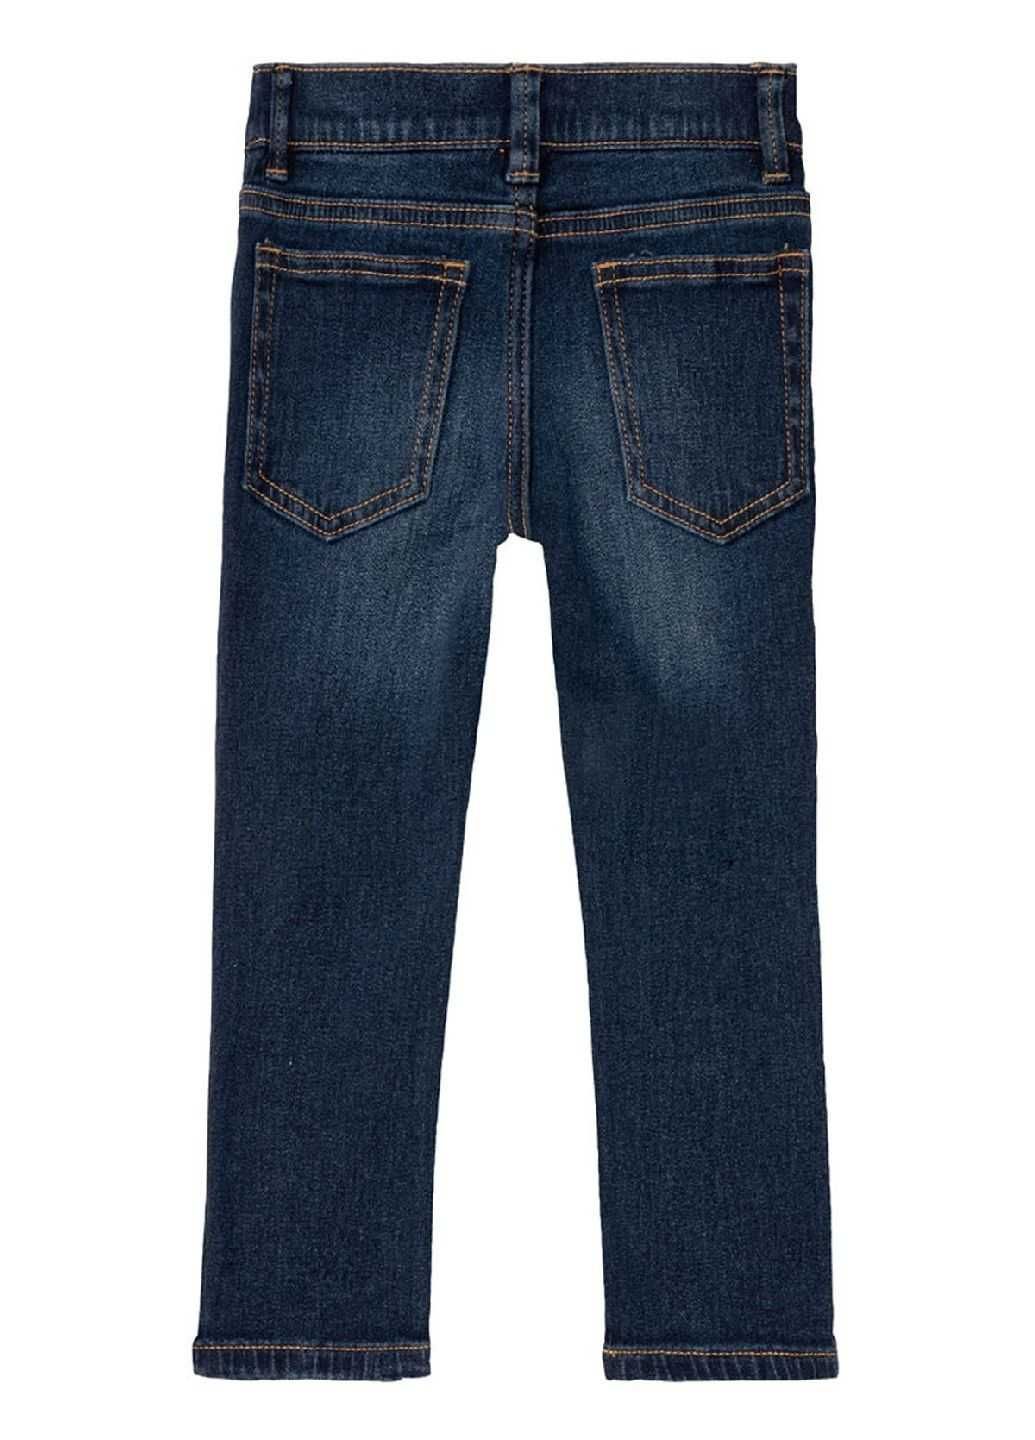 демисезонные джинсы Lupilu 98 р